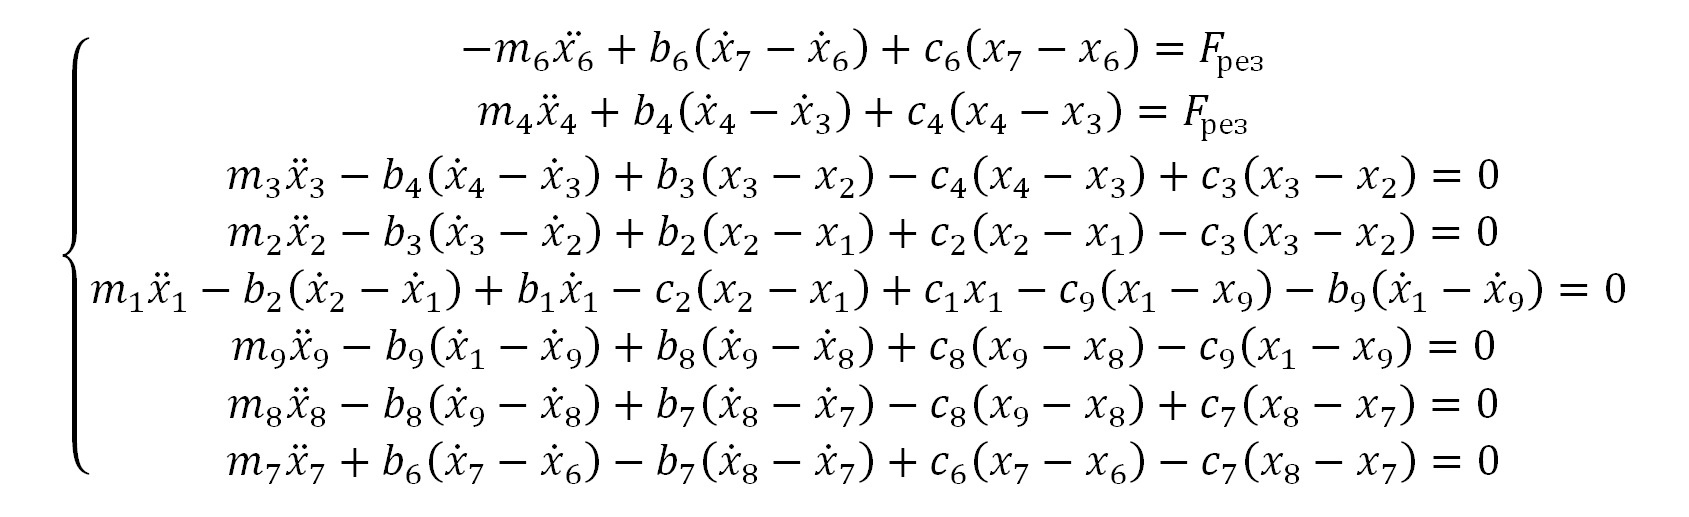 Система уравнений, описывающая математическую модель